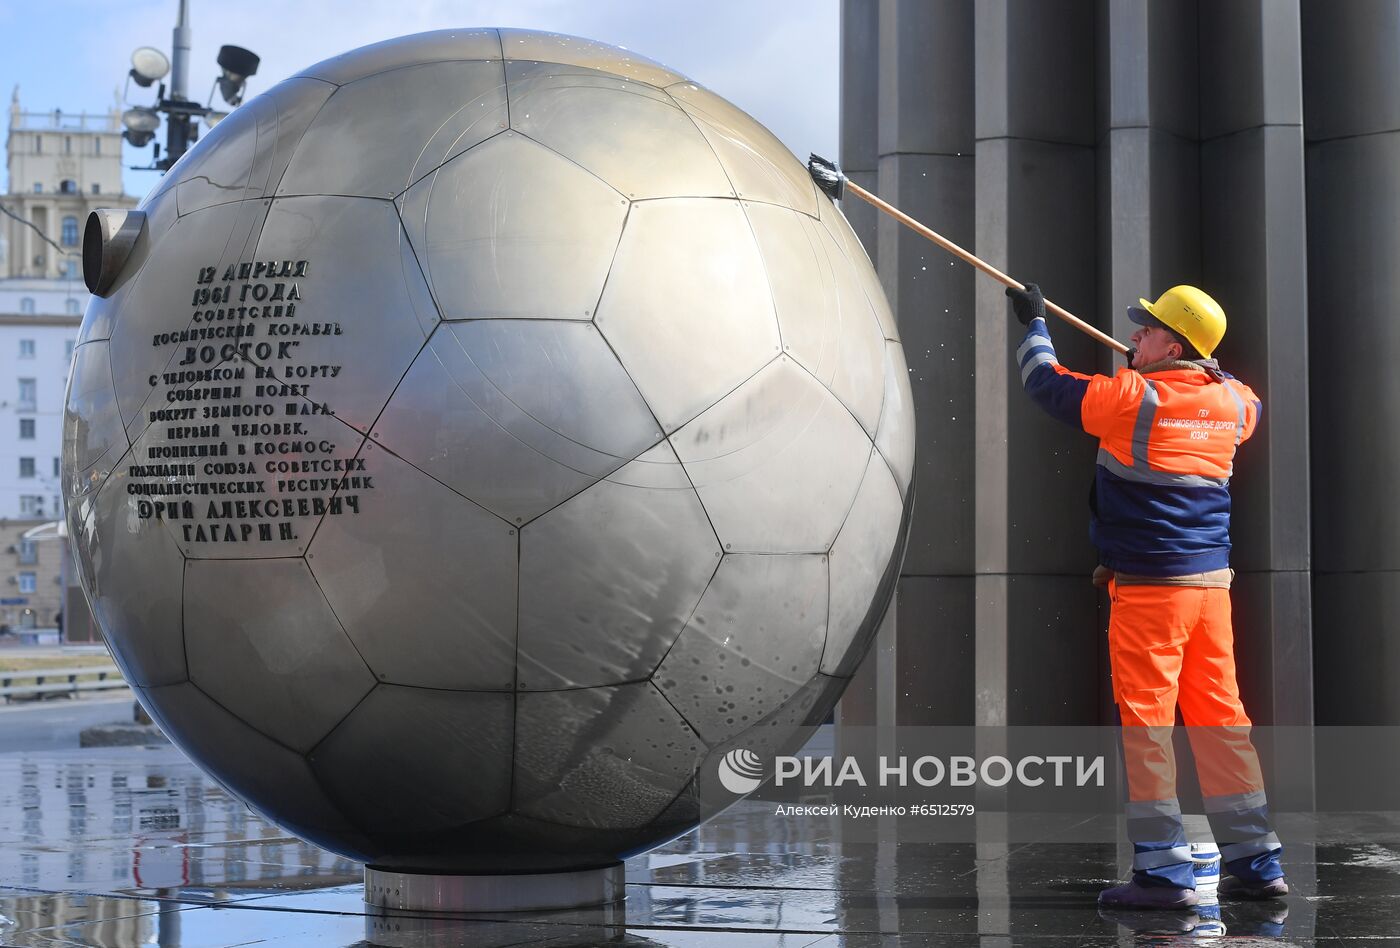 Помывка памятников Ю. Гагарину в Москве